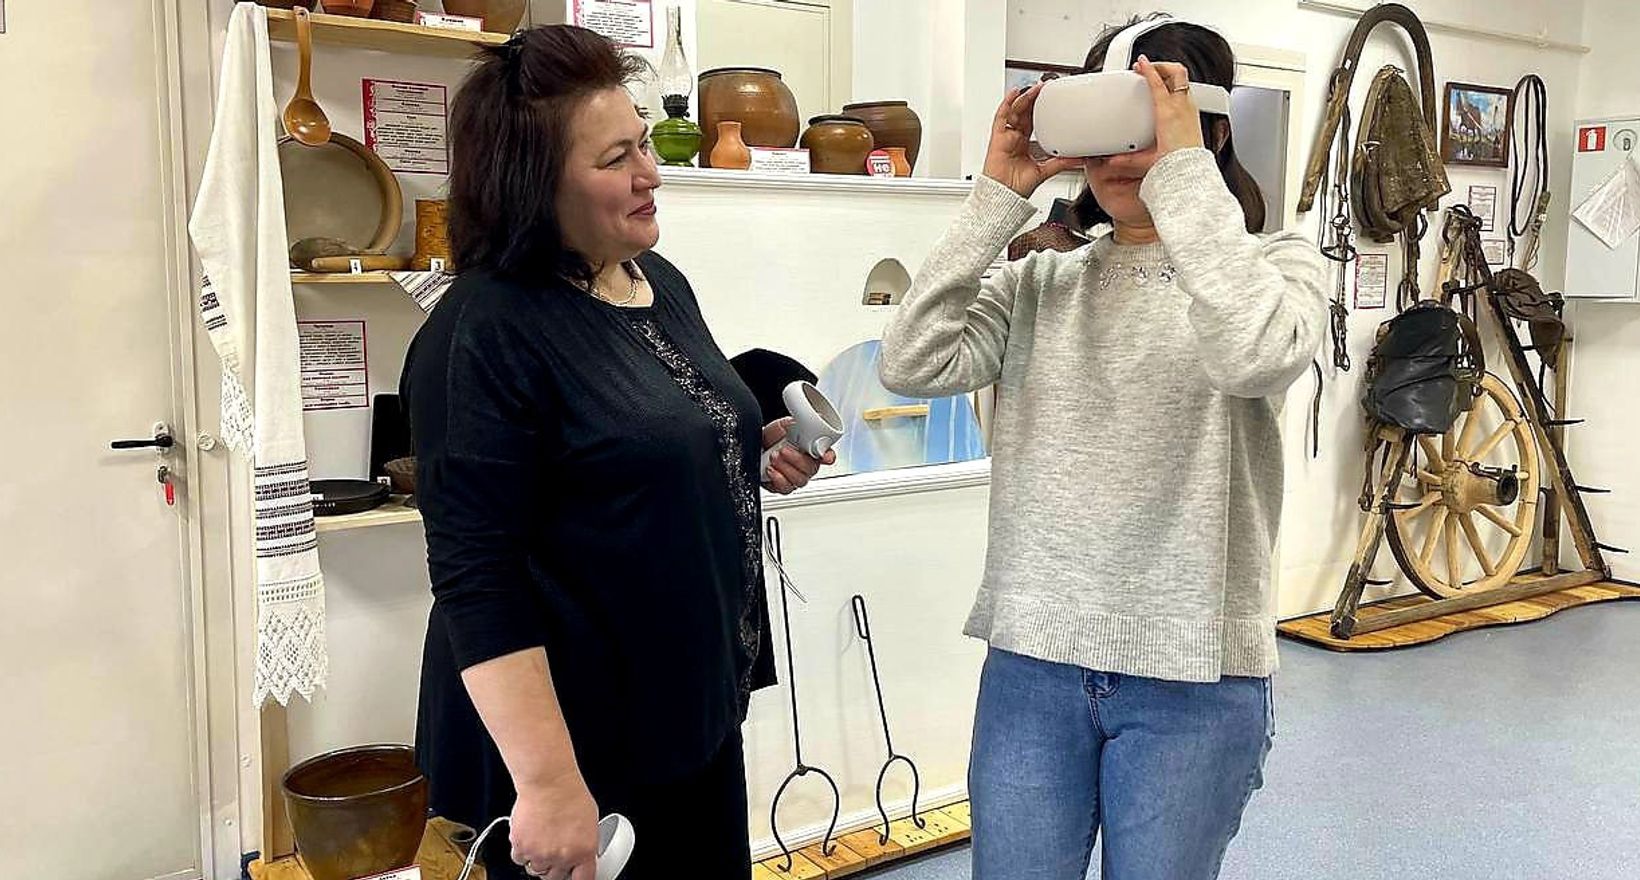 Обзорная экскурсия по музею с VR-технологией